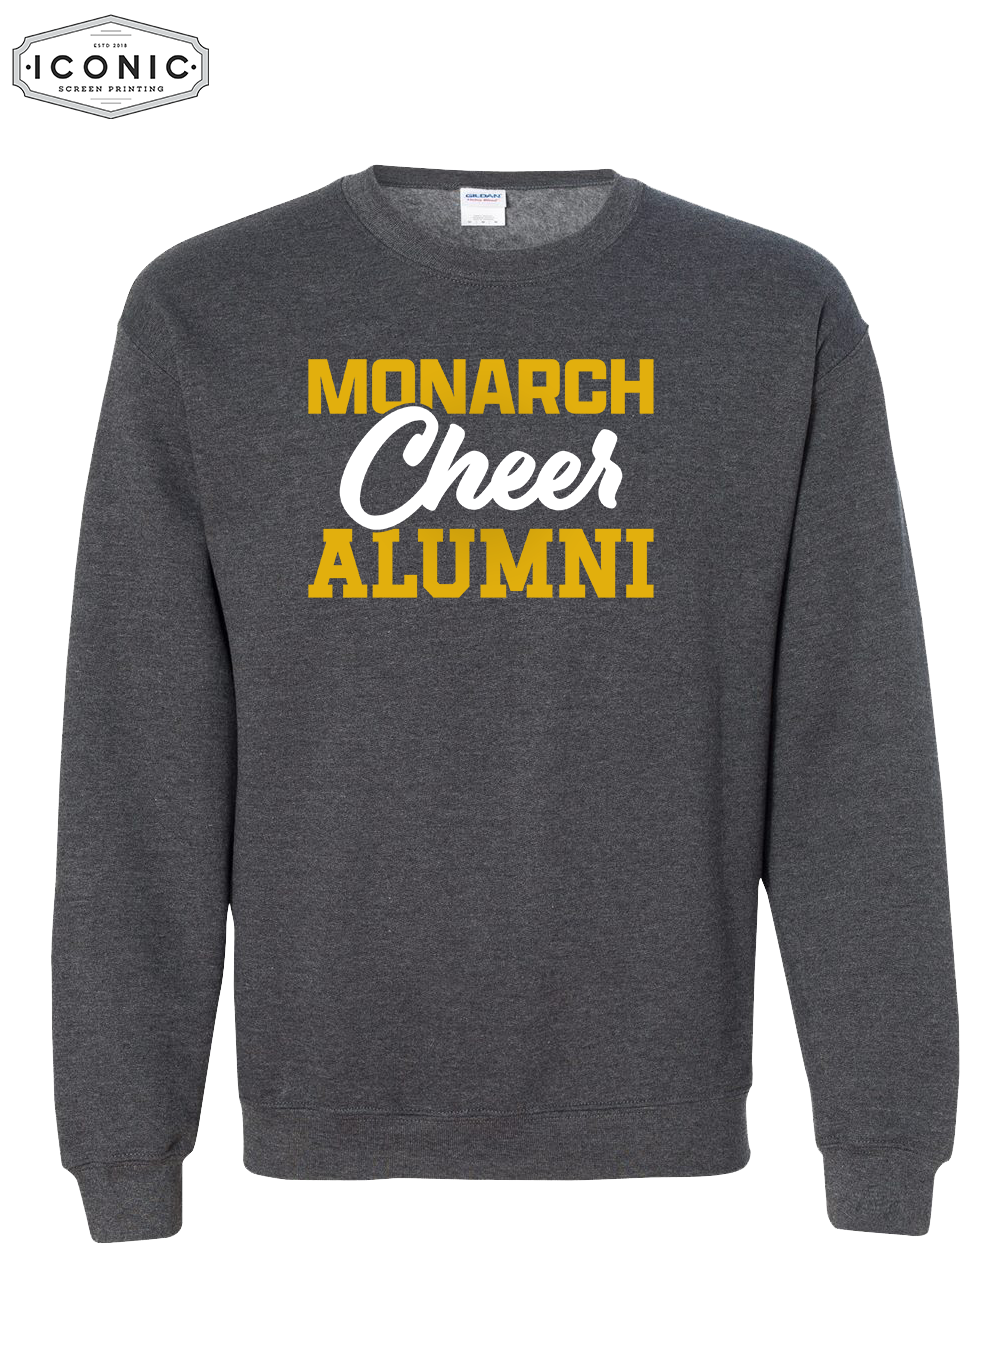 Cheer Alumni - Heavy Blend Sweatshirt